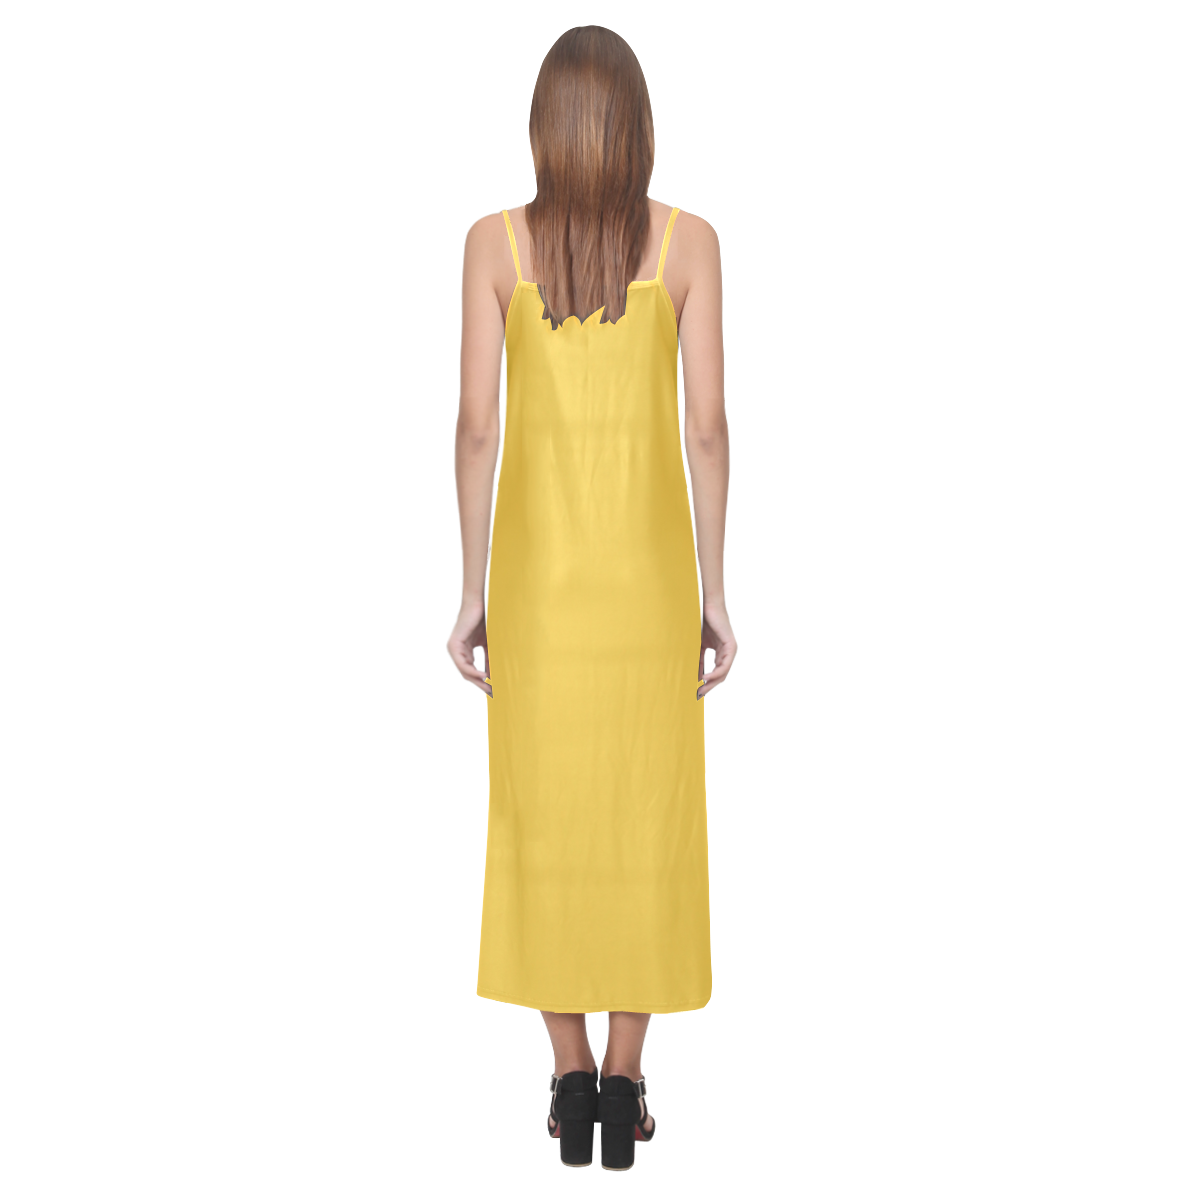 Freesia V-Neck Open Fork Long Dress(Model D18)